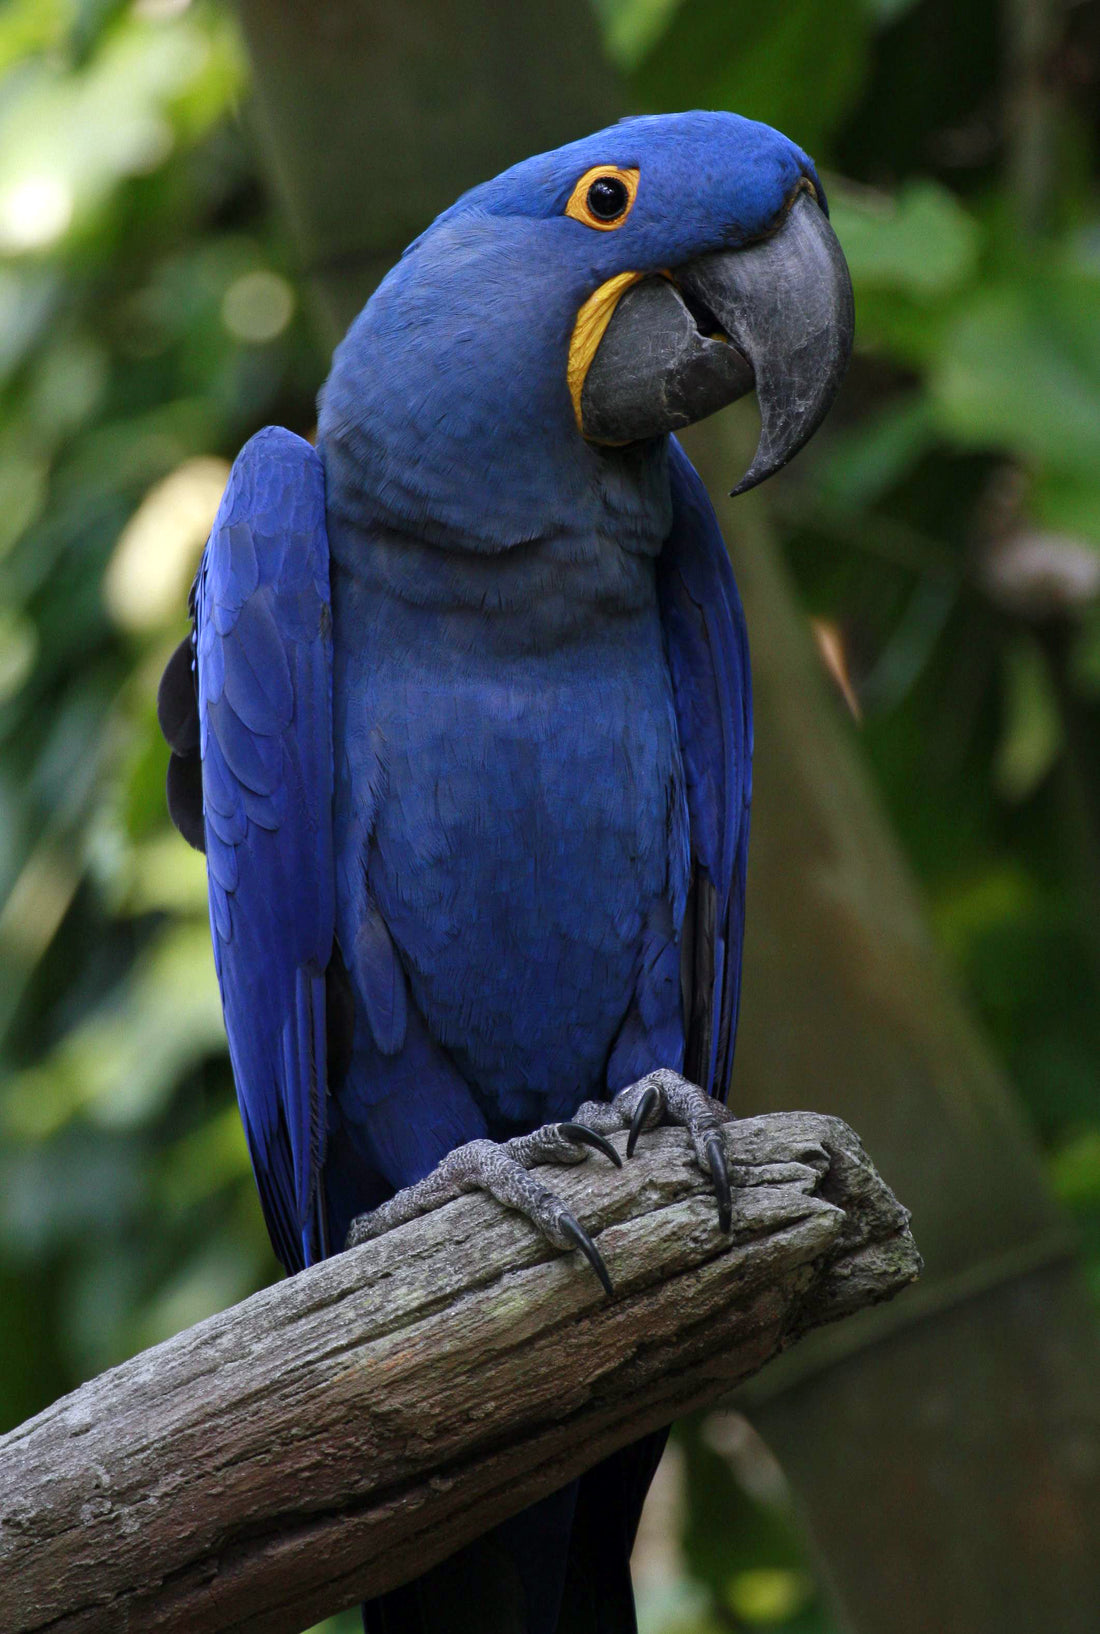 Did i hear someone say Hyacinth Macaw?